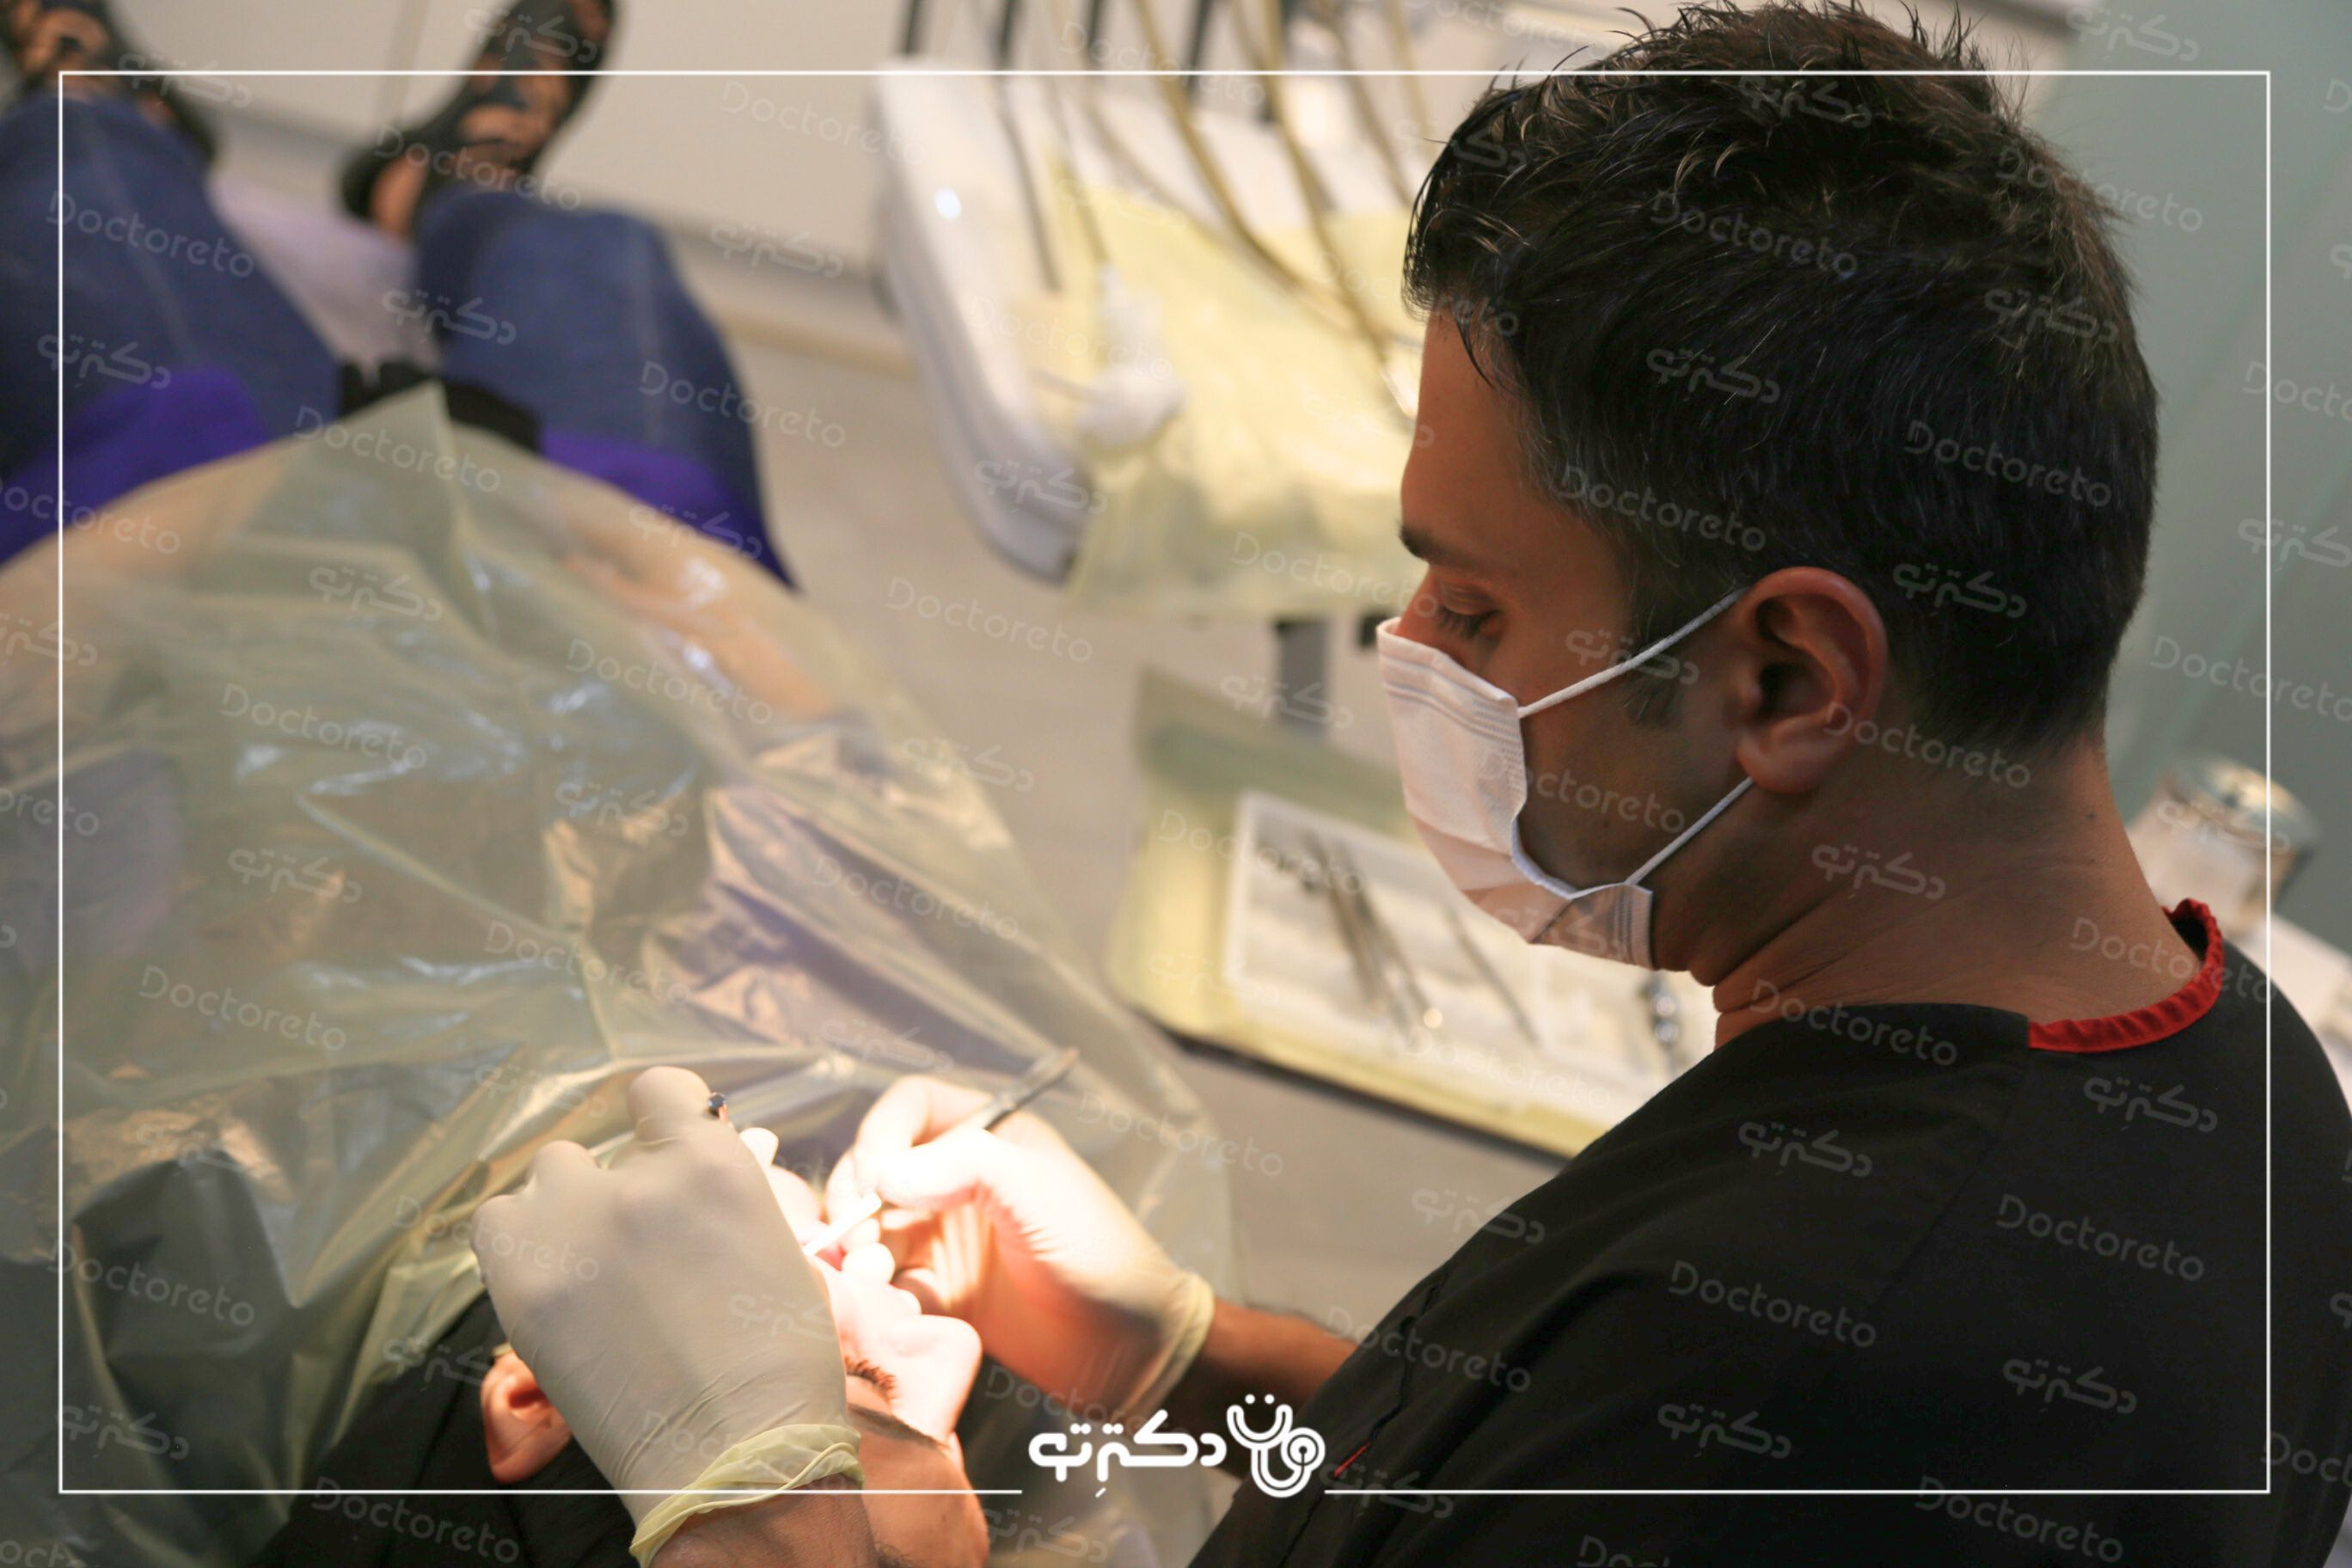 پر کردن دندان یک سطحی با کامپوزیت کره ای دکتر امیر خلیلیان در اصفهان 8